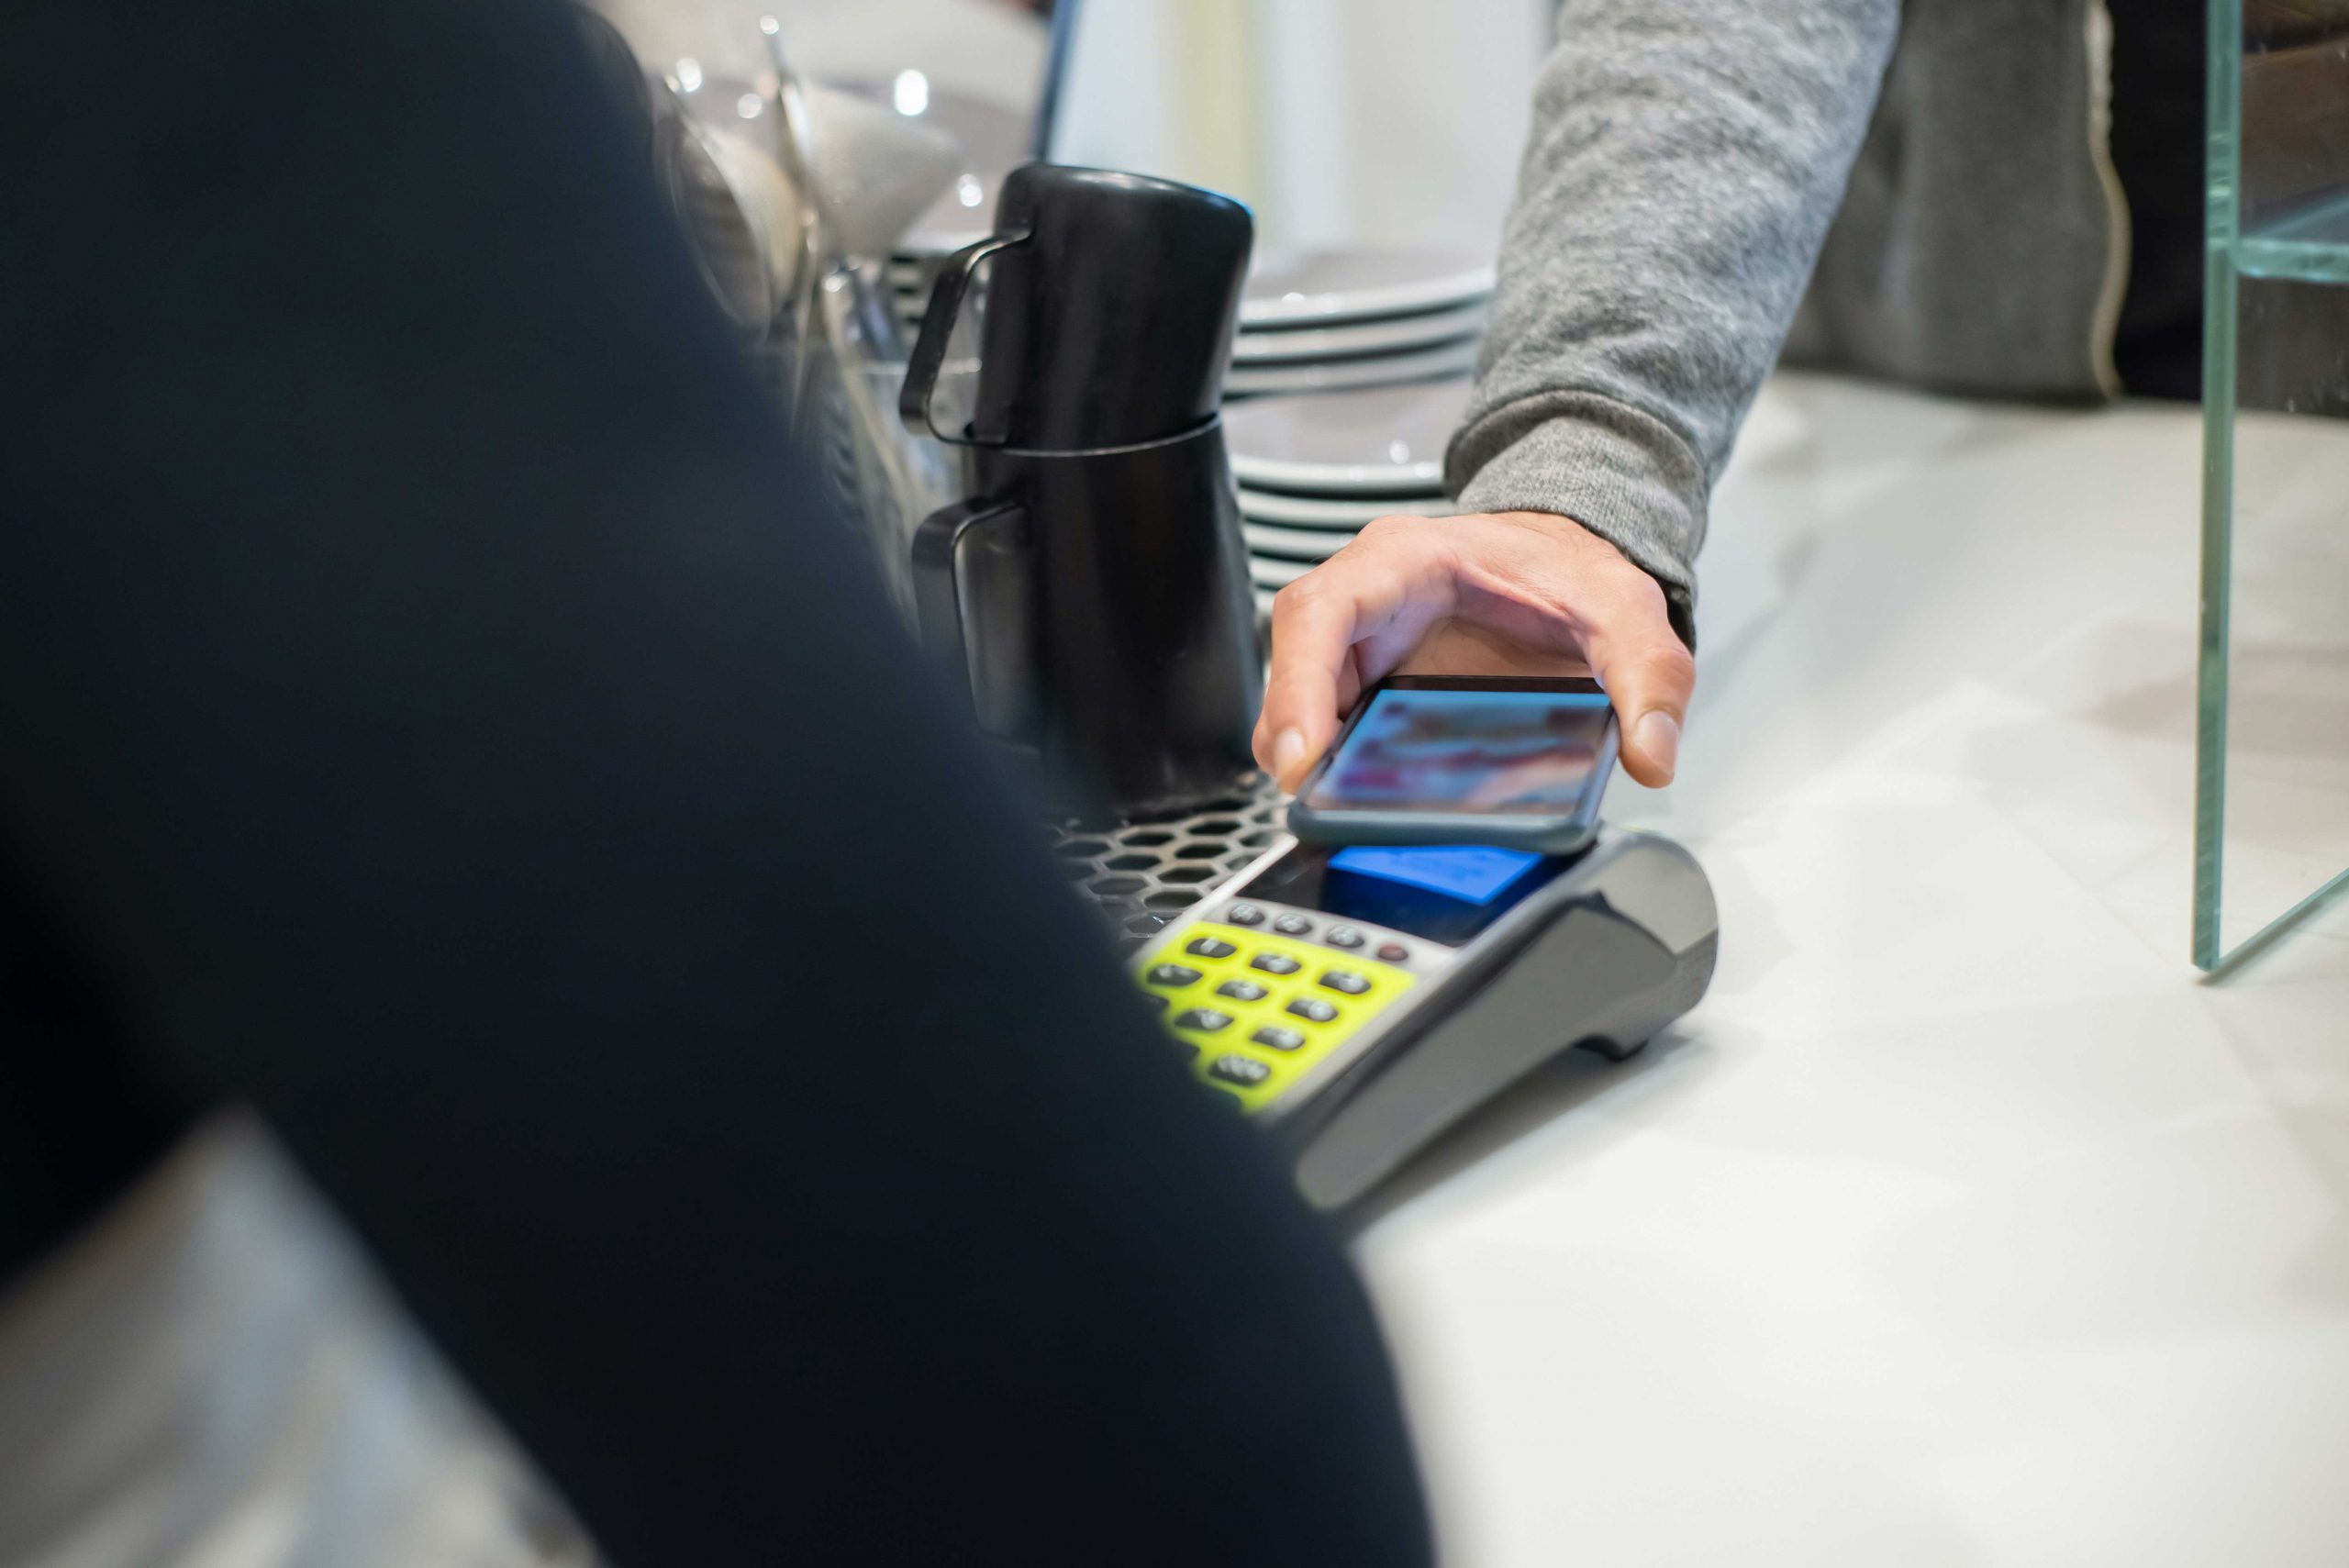 zu sehen sit eine Person, die in einem Geschäft mit ihrem Smartphone bezahlt. Bild: Pexels/Kampus Production